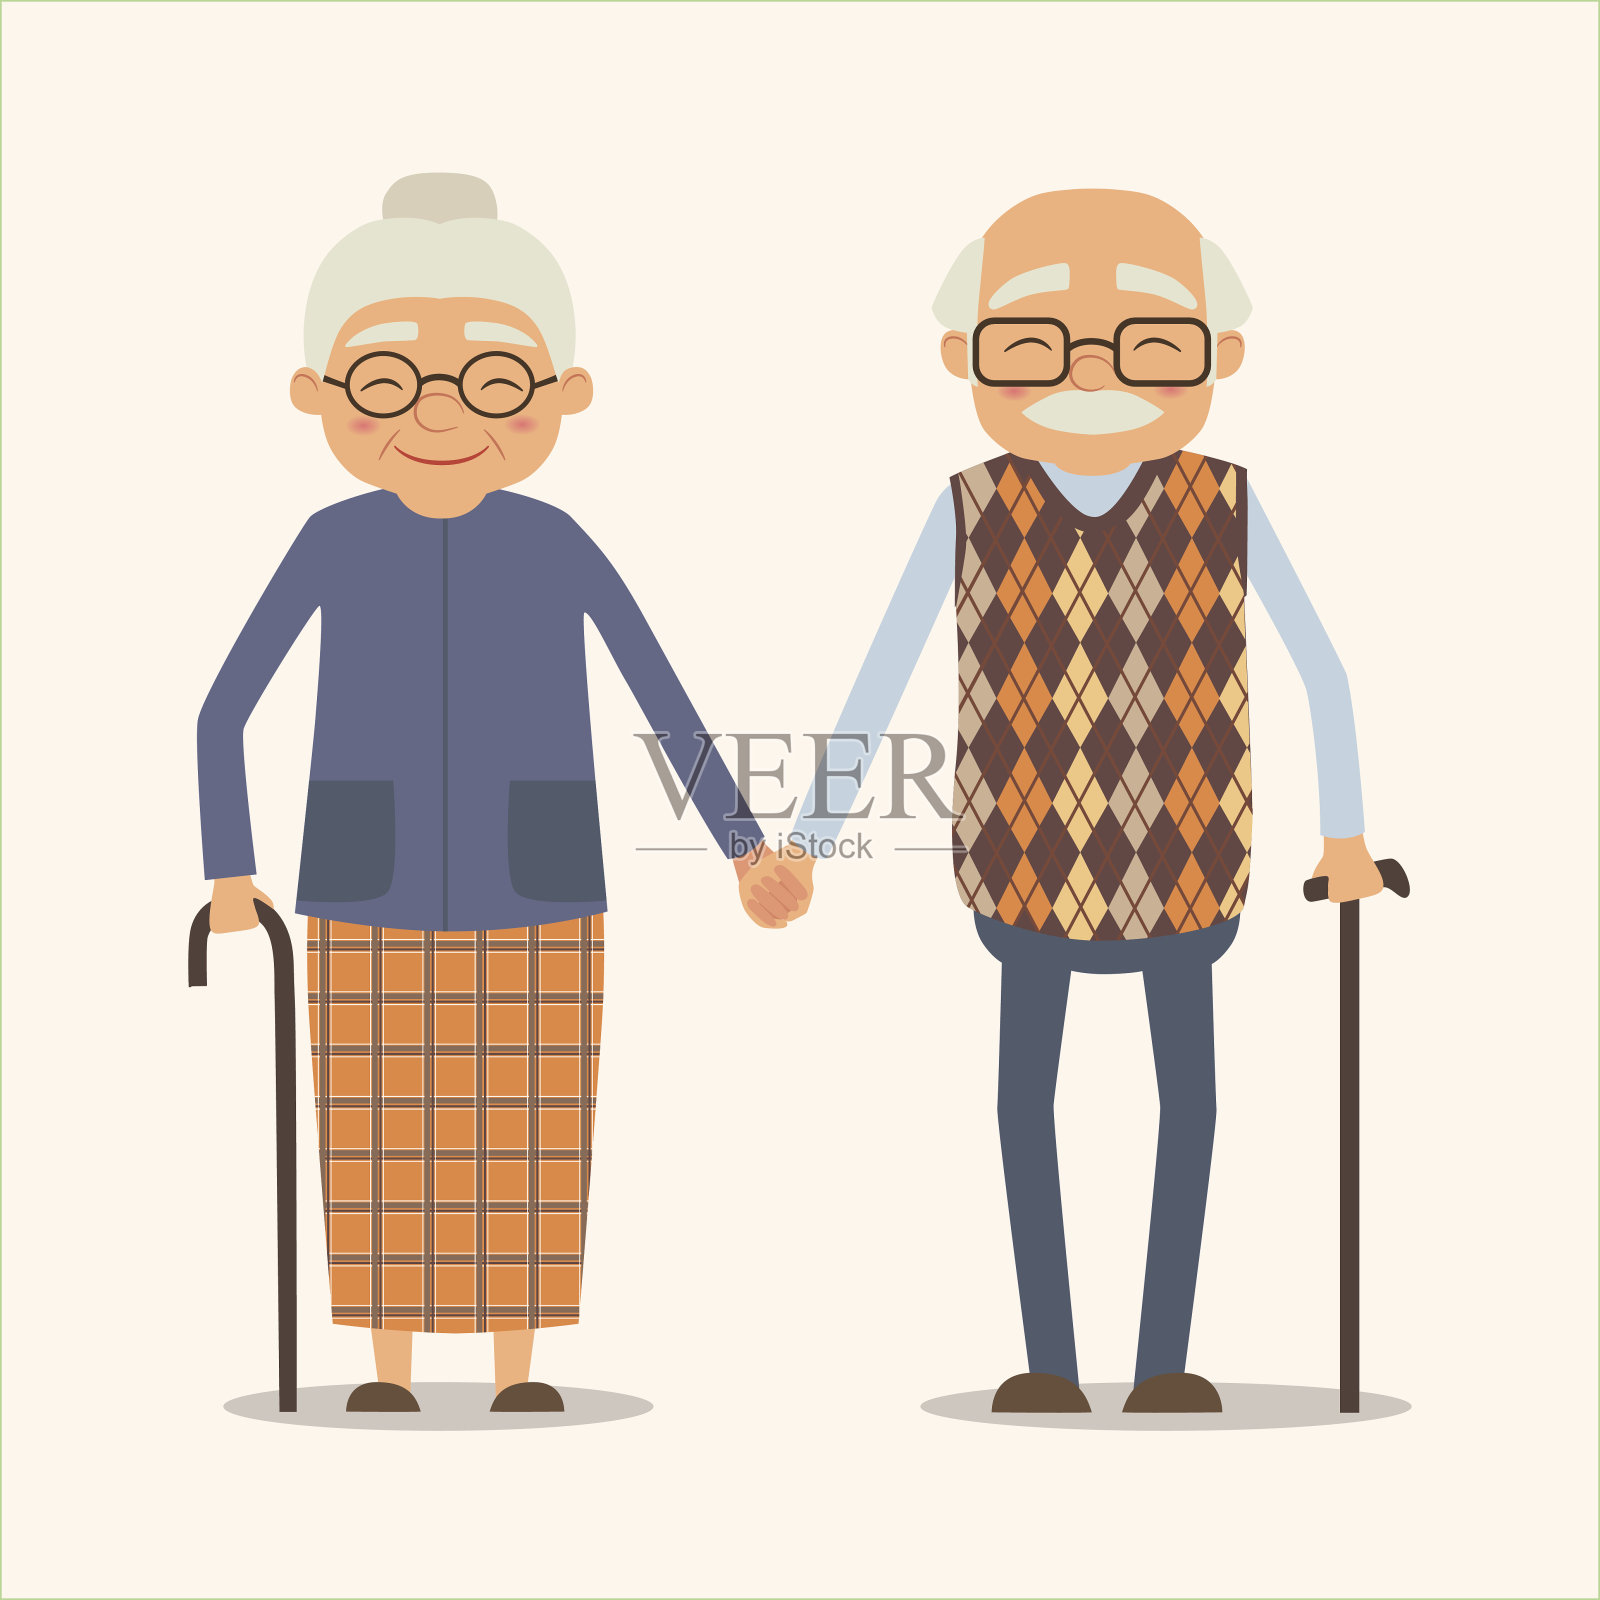 爷爷奶奶，卡通风格的幸福夫妻向量形象插画图片素材